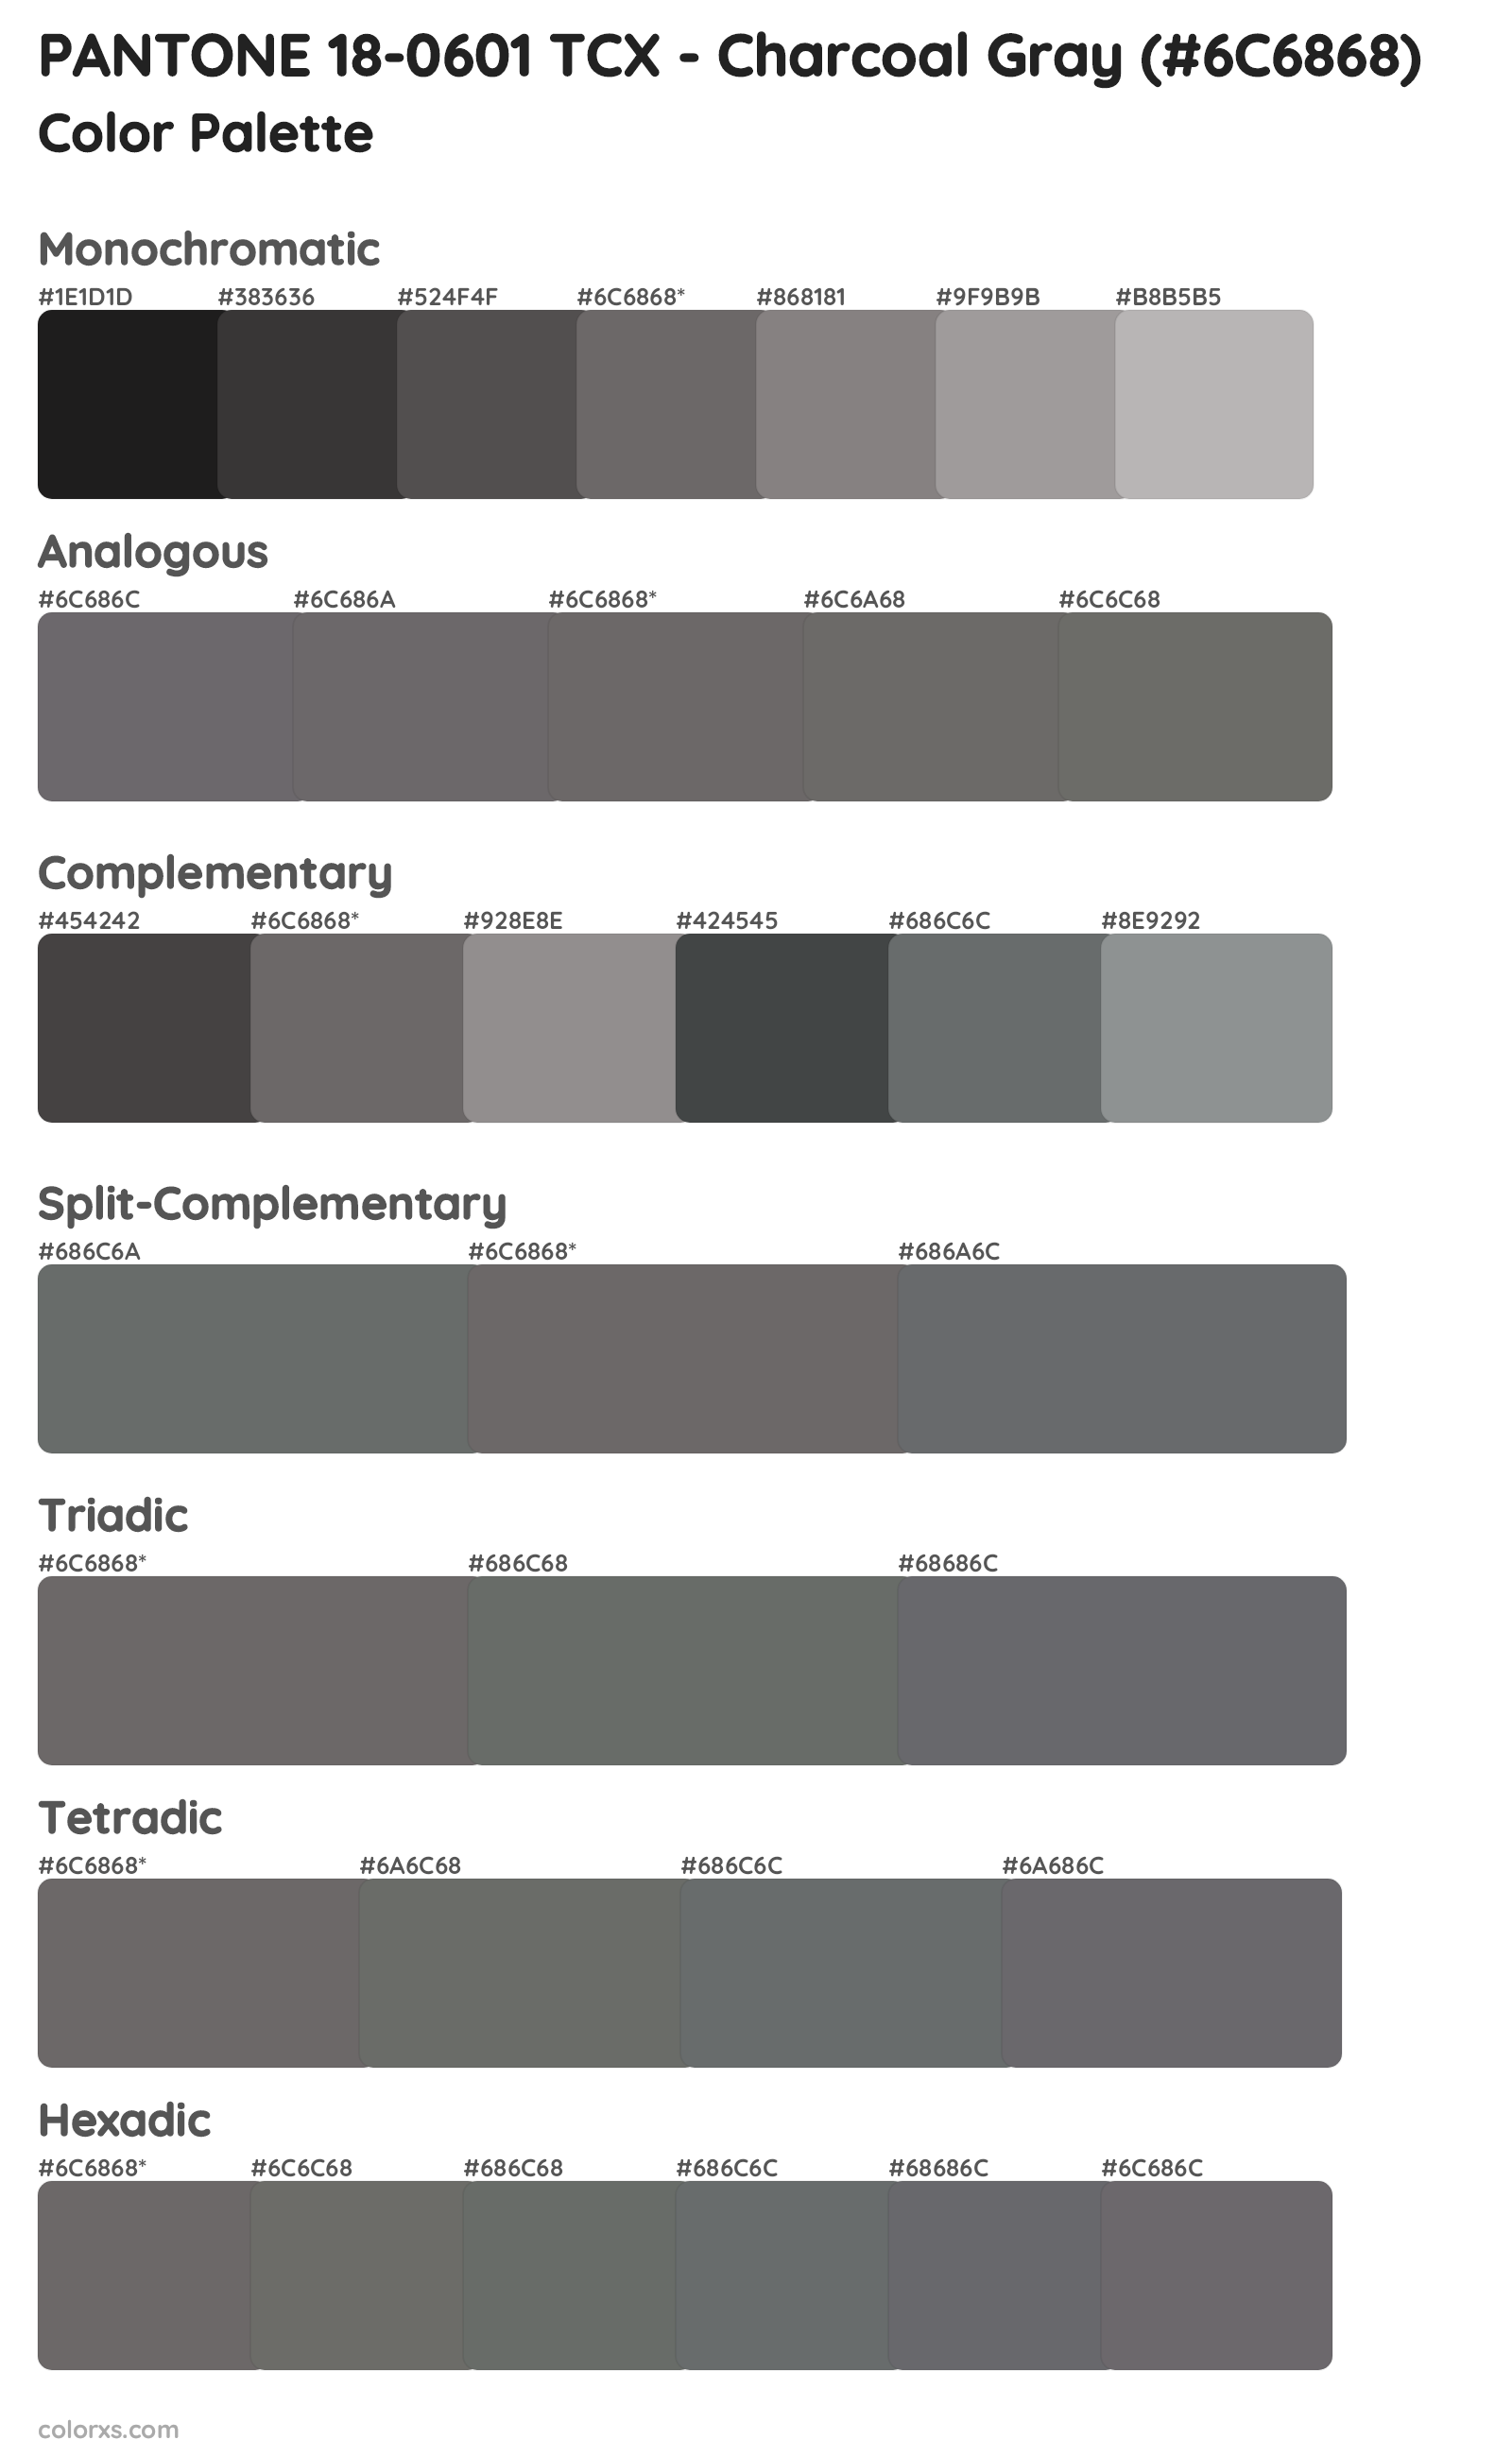 PANTONE 18-0601 TCX - Charcoal Gray Color Scheme Palettes